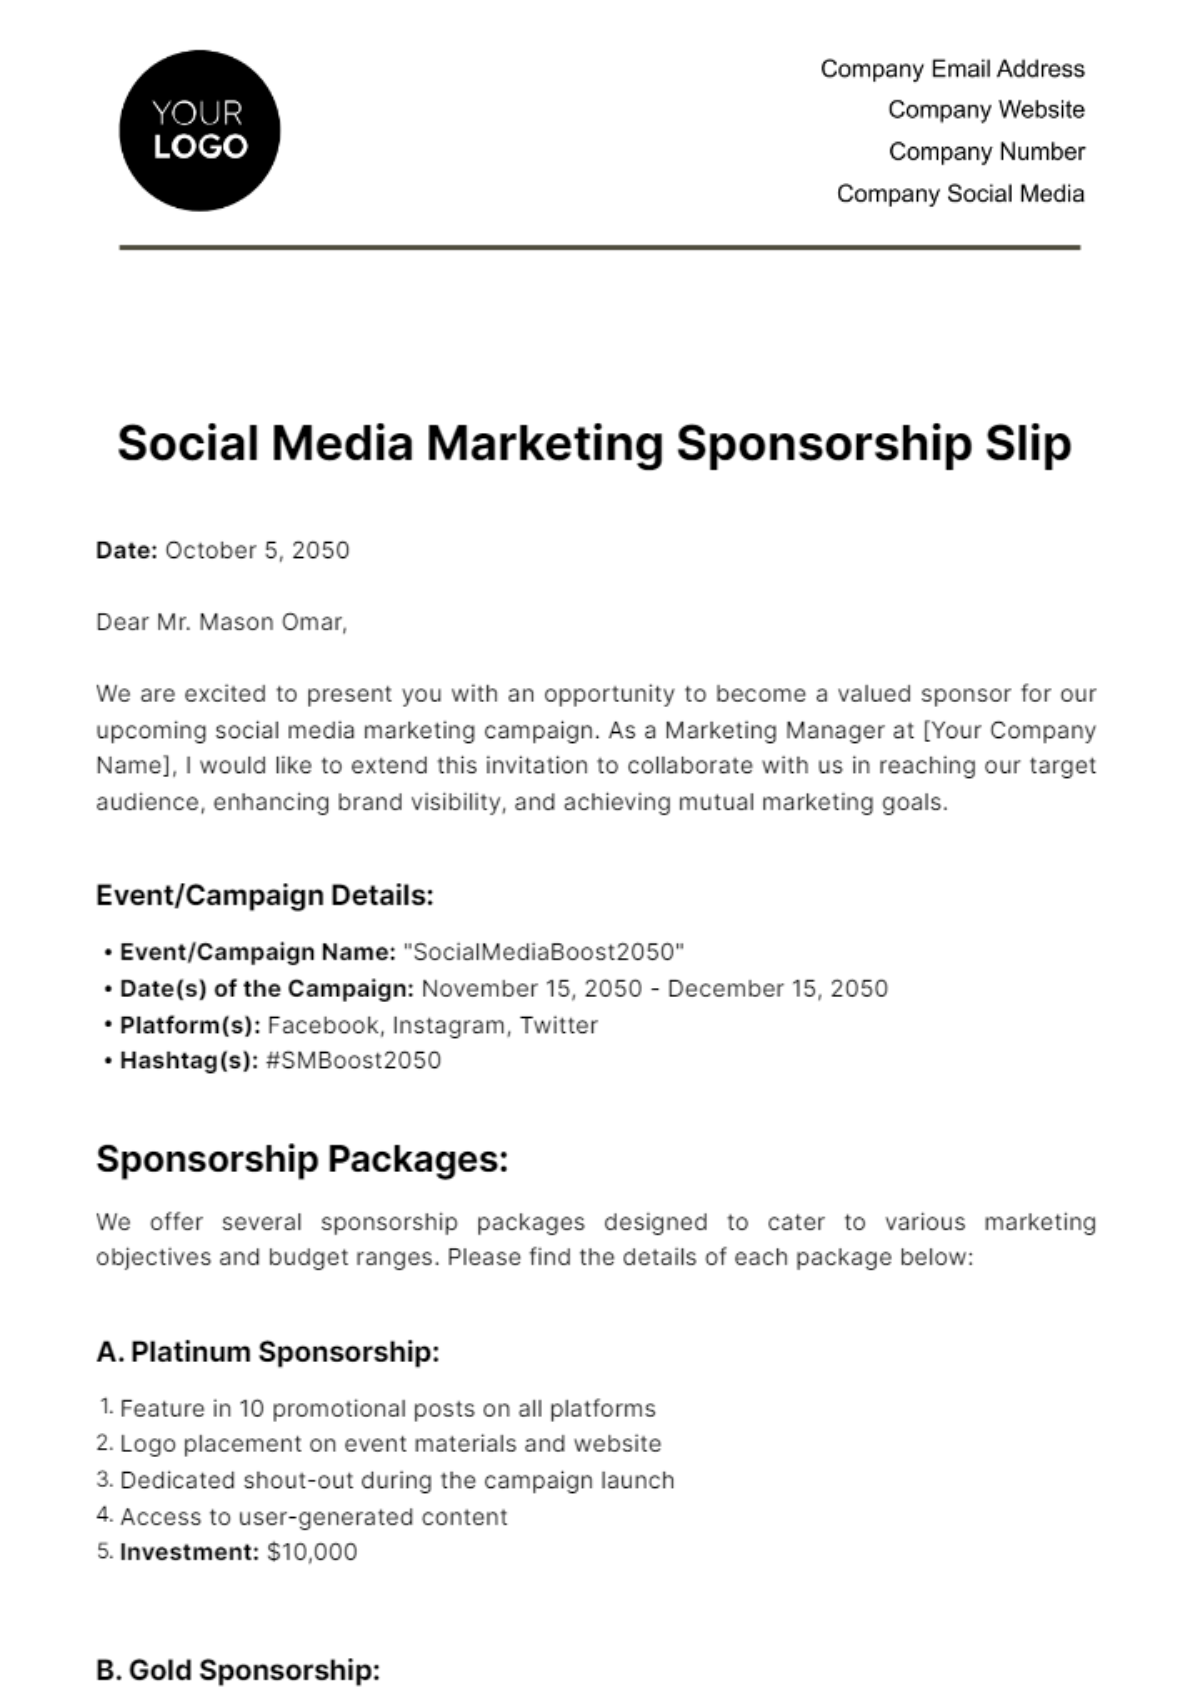 Social Media Marketing Sponsorship Slip Template